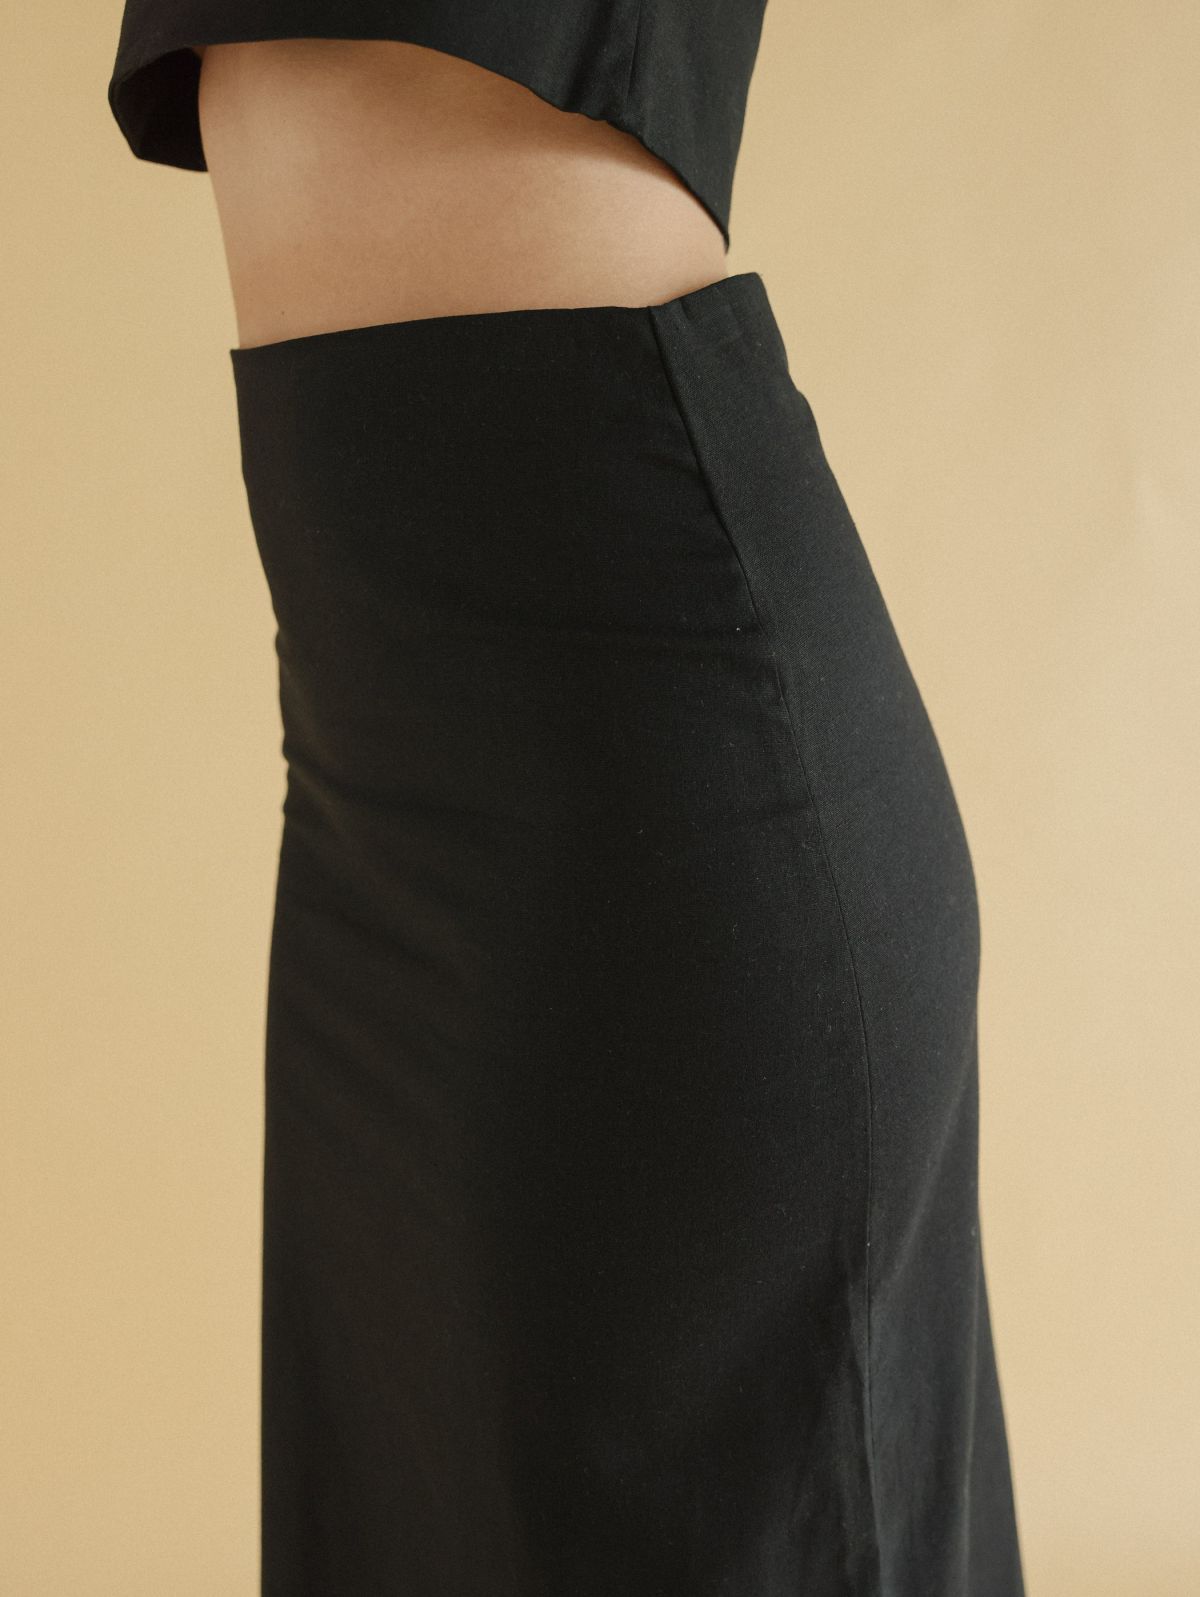  חצאית מקסי פשתן של YUVAL KASPIT